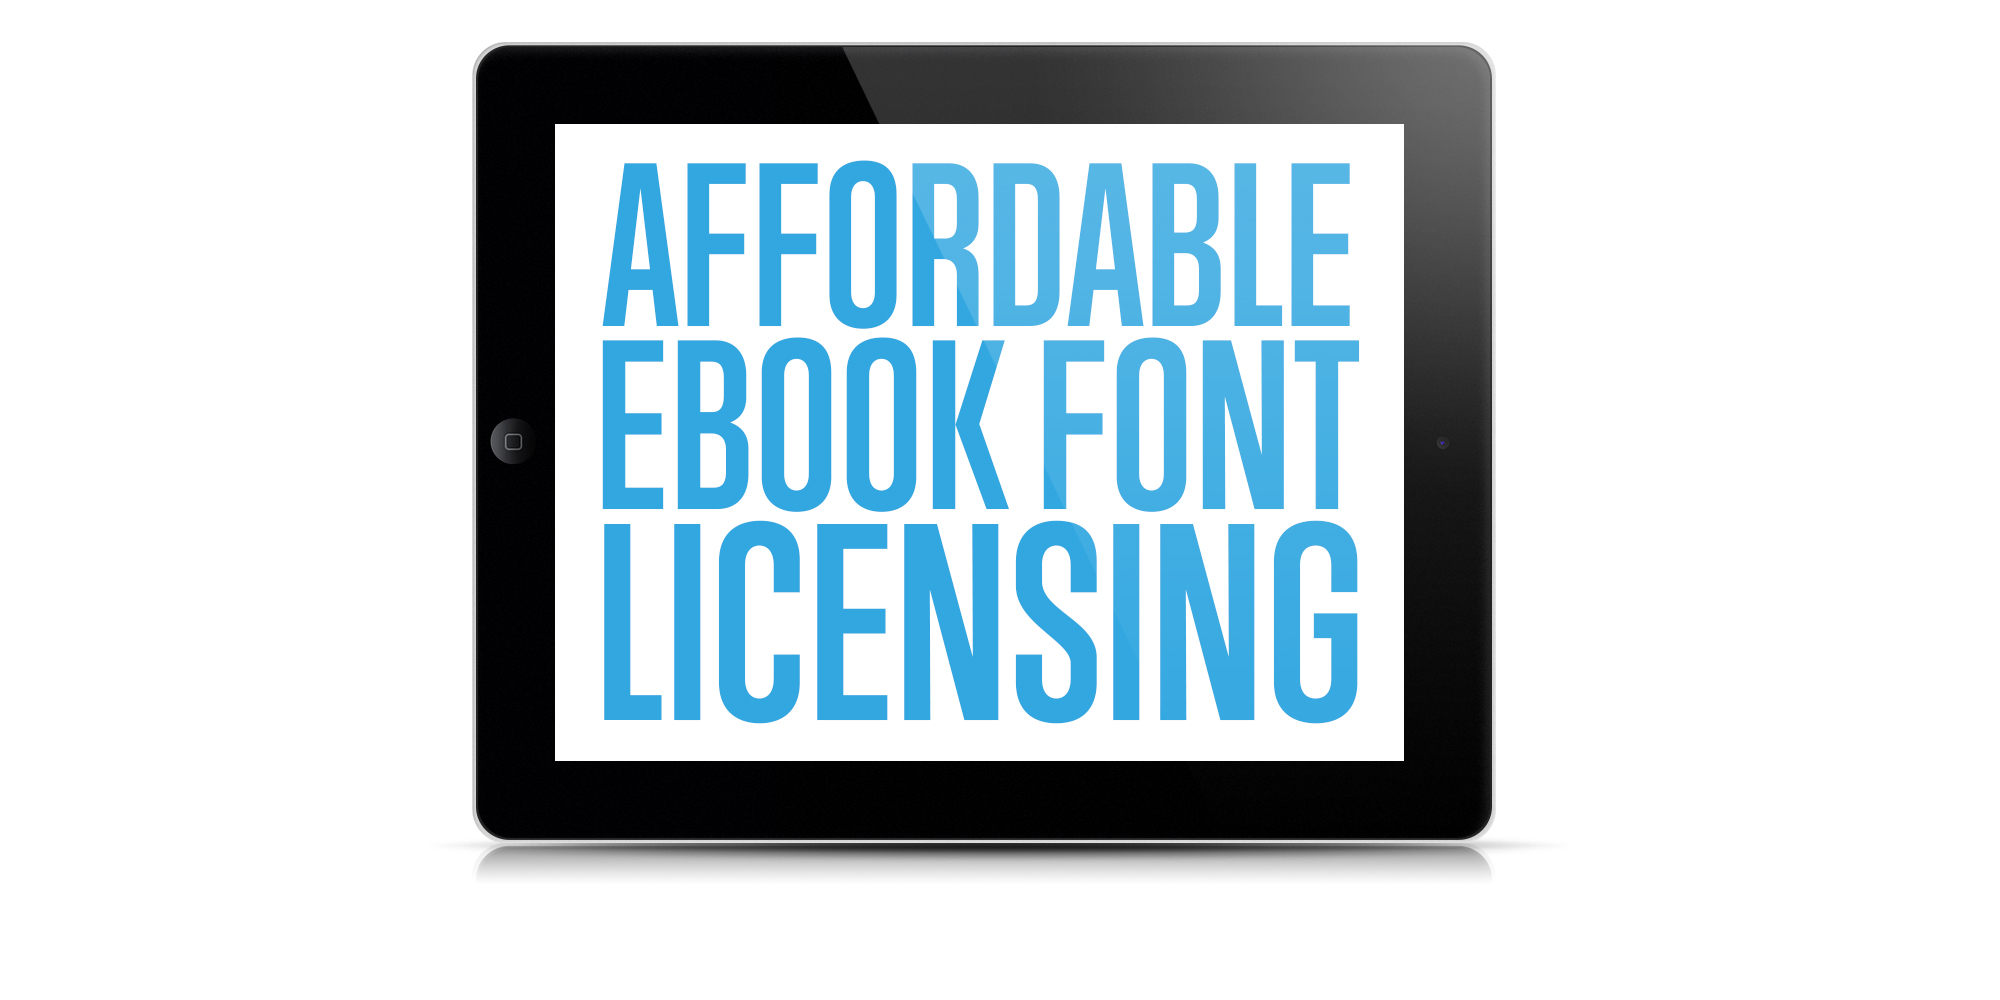 Affordable Ebook Font Licensing